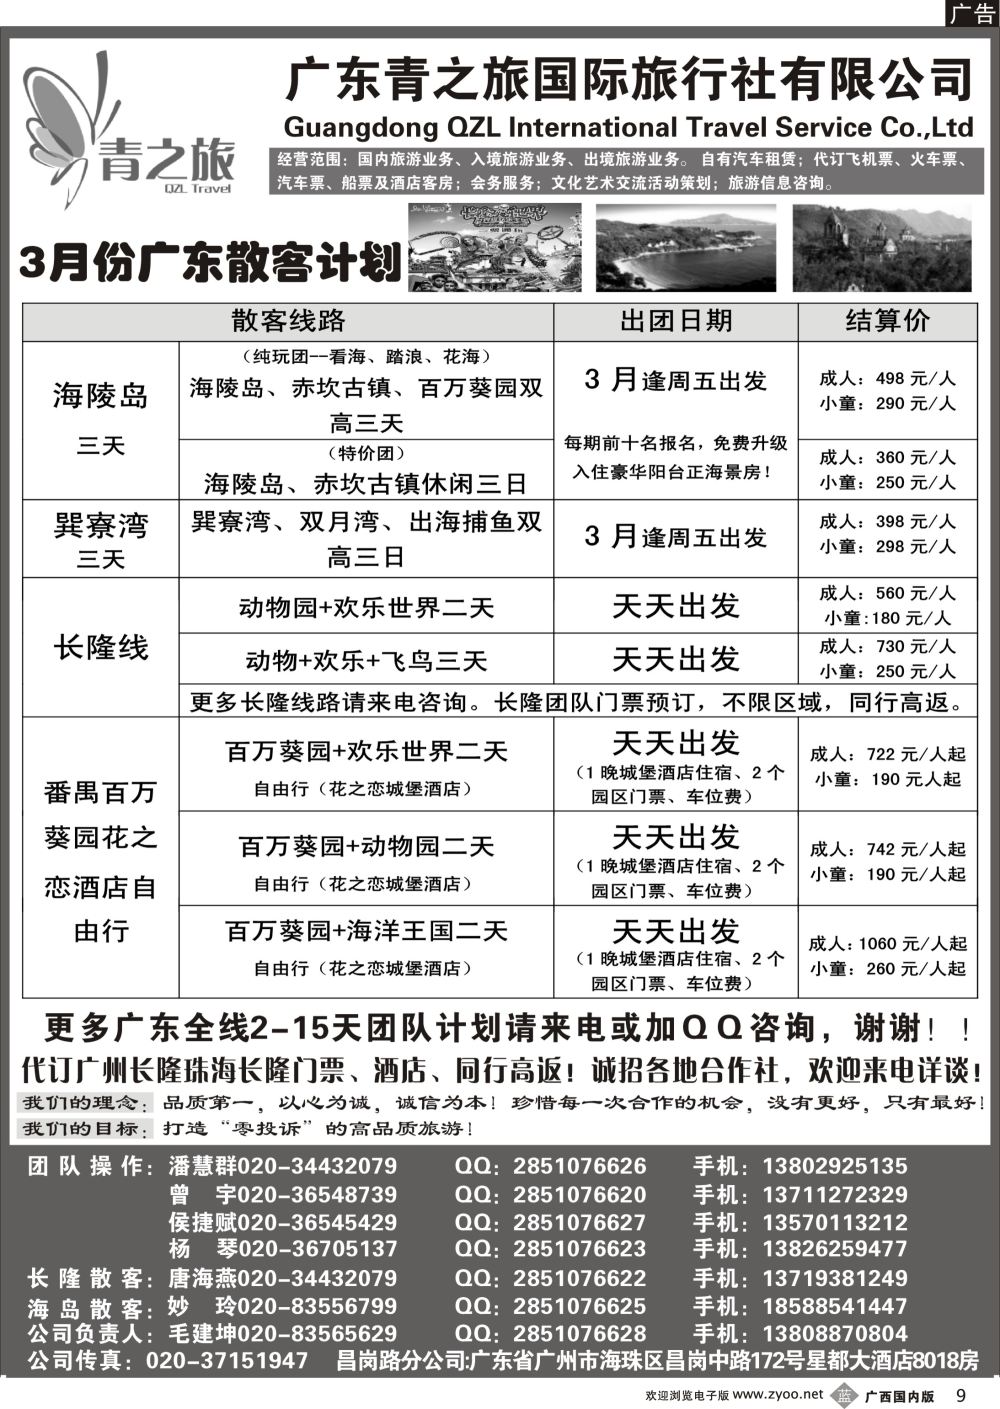 b09广州青之旅国际旅行社--广州长隆、珠海长隆、海陵岛开平专线